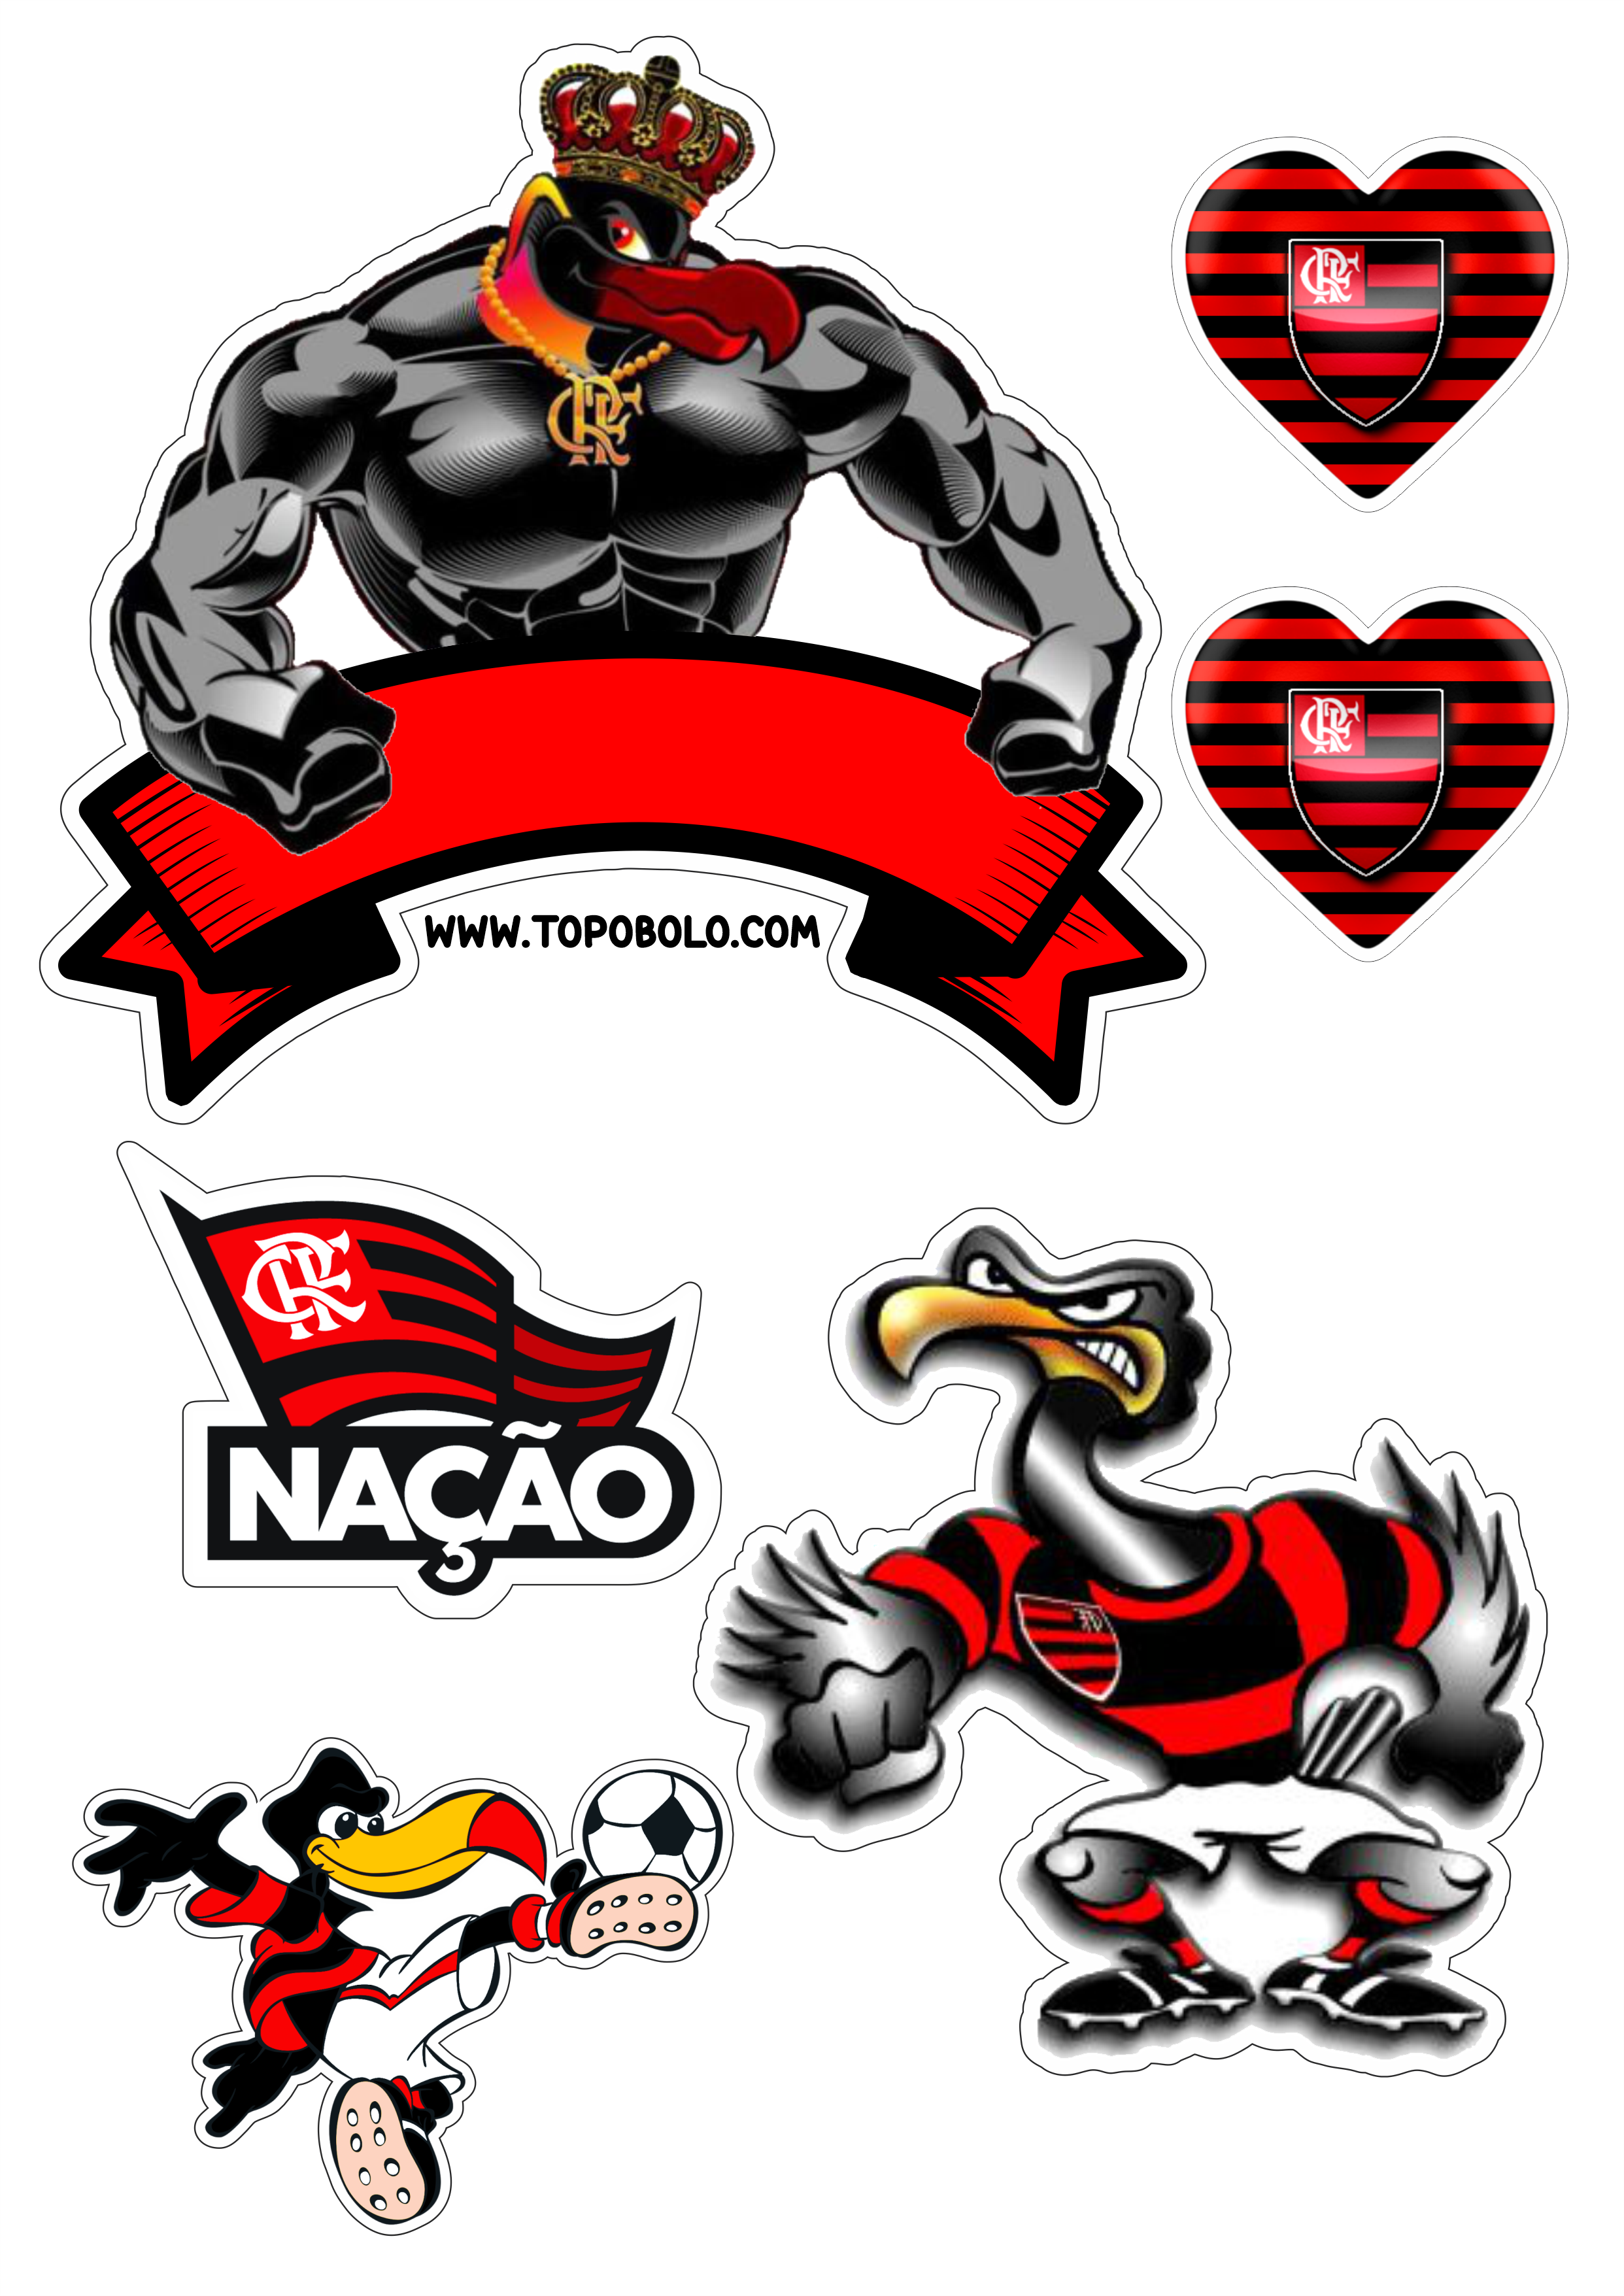 Flamengo futebol clube topo de bolo decoração de aniversário urubu mascote campeonato carioca coração rubro negro artes gráficas png